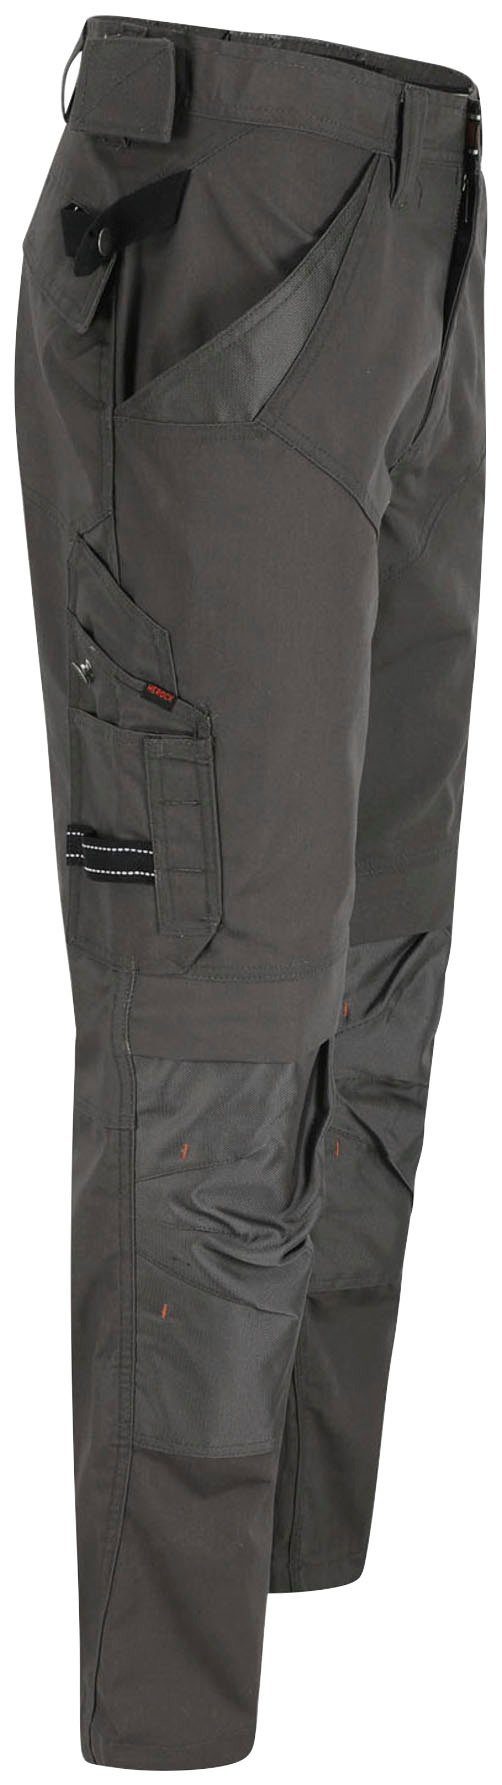 Herock Arbeitshose Apollo Hose Wasserabweisend - - & bequem 8 leicht - Regelbarer Taschen Bund grau